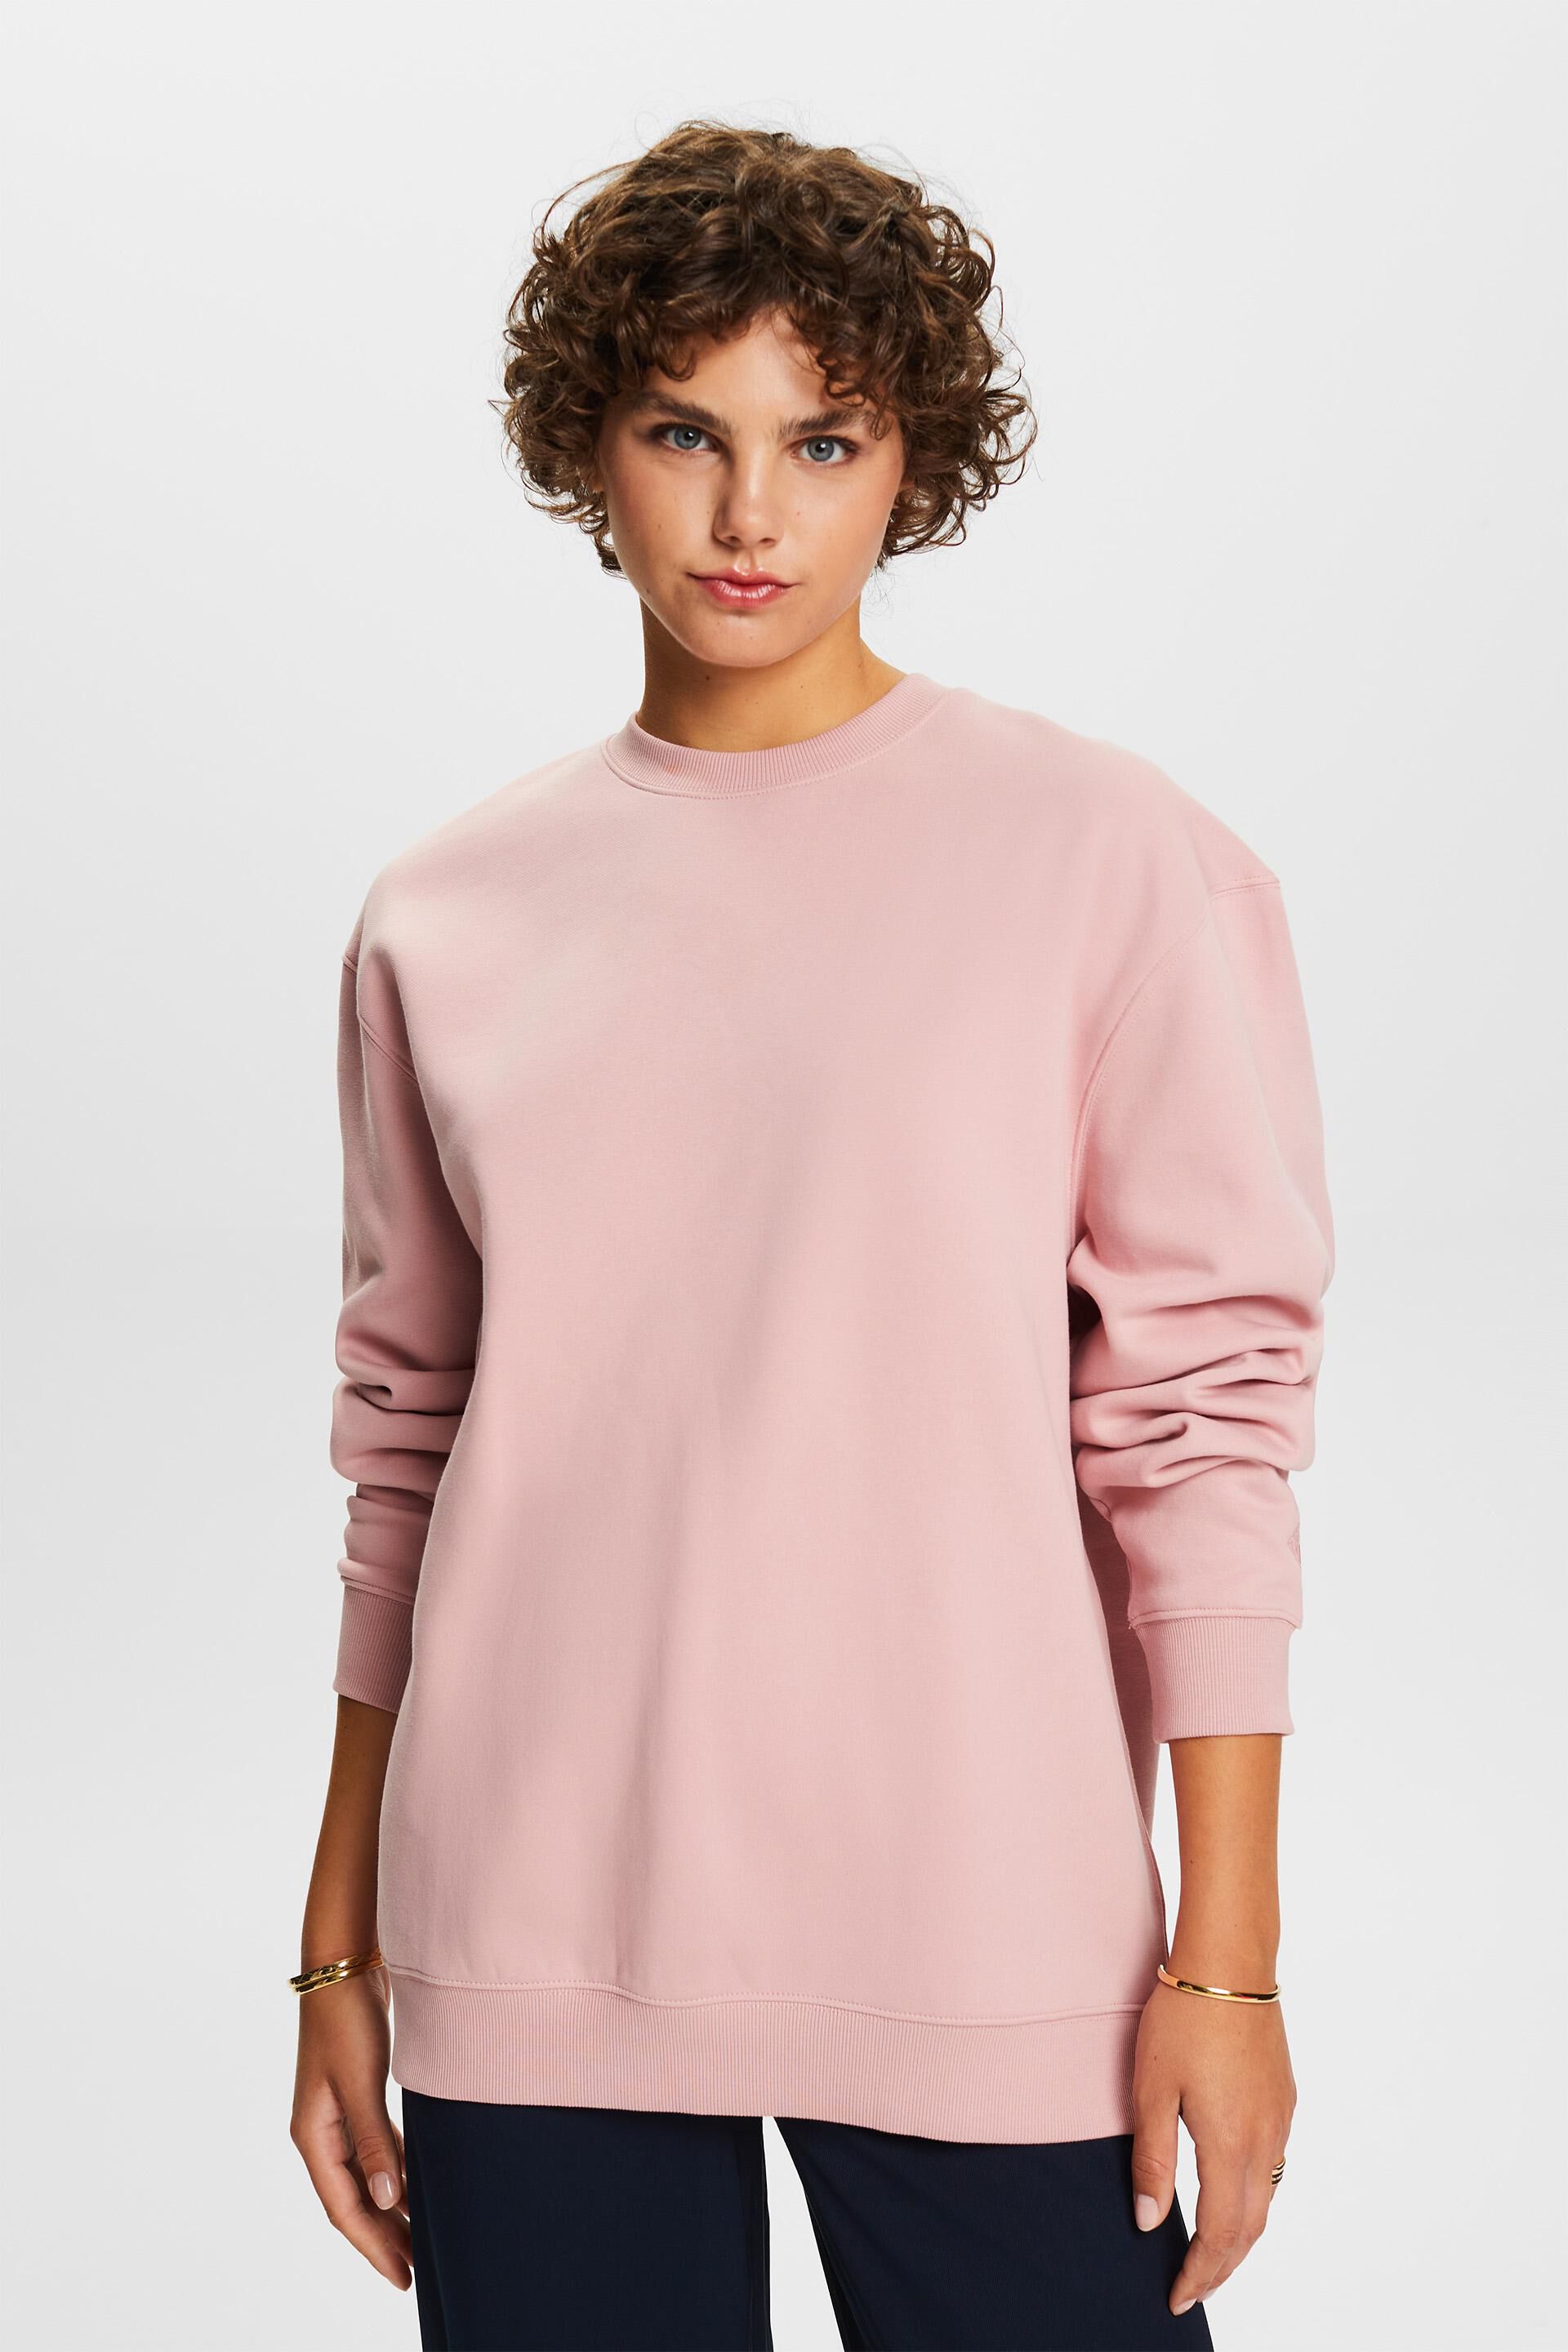 Esprit Damen Cotton Blend Pullover Sweatshirt